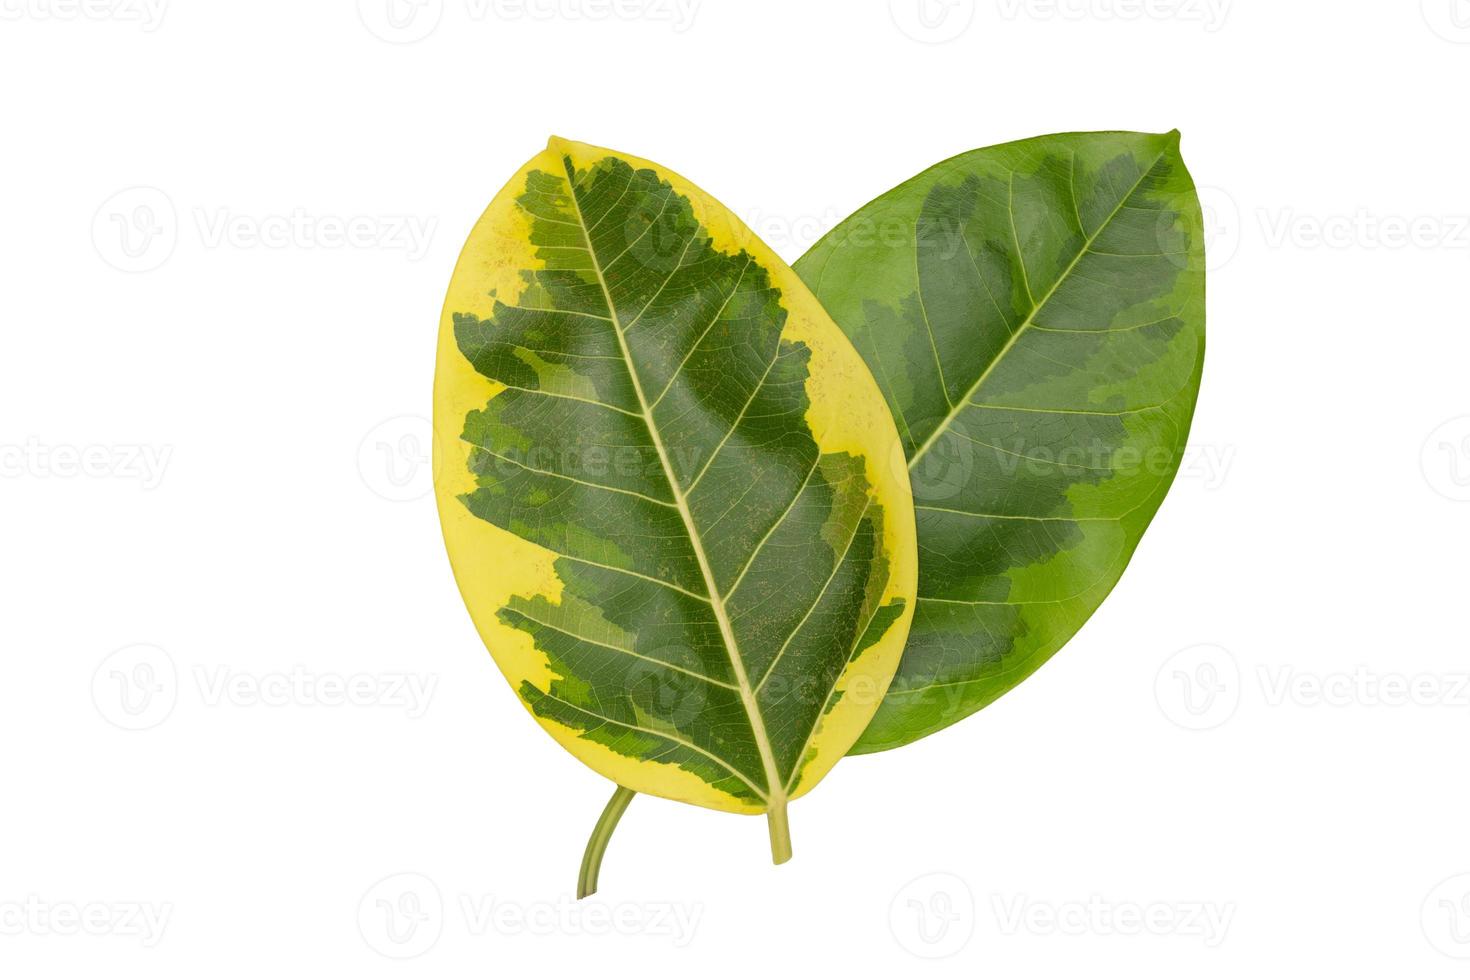 motif de feuilles vertes, feuille de plante d'automne isolée sur fond blanc, plante caricaturale ou graptophyllum pictum, ficus elastica variegata photo